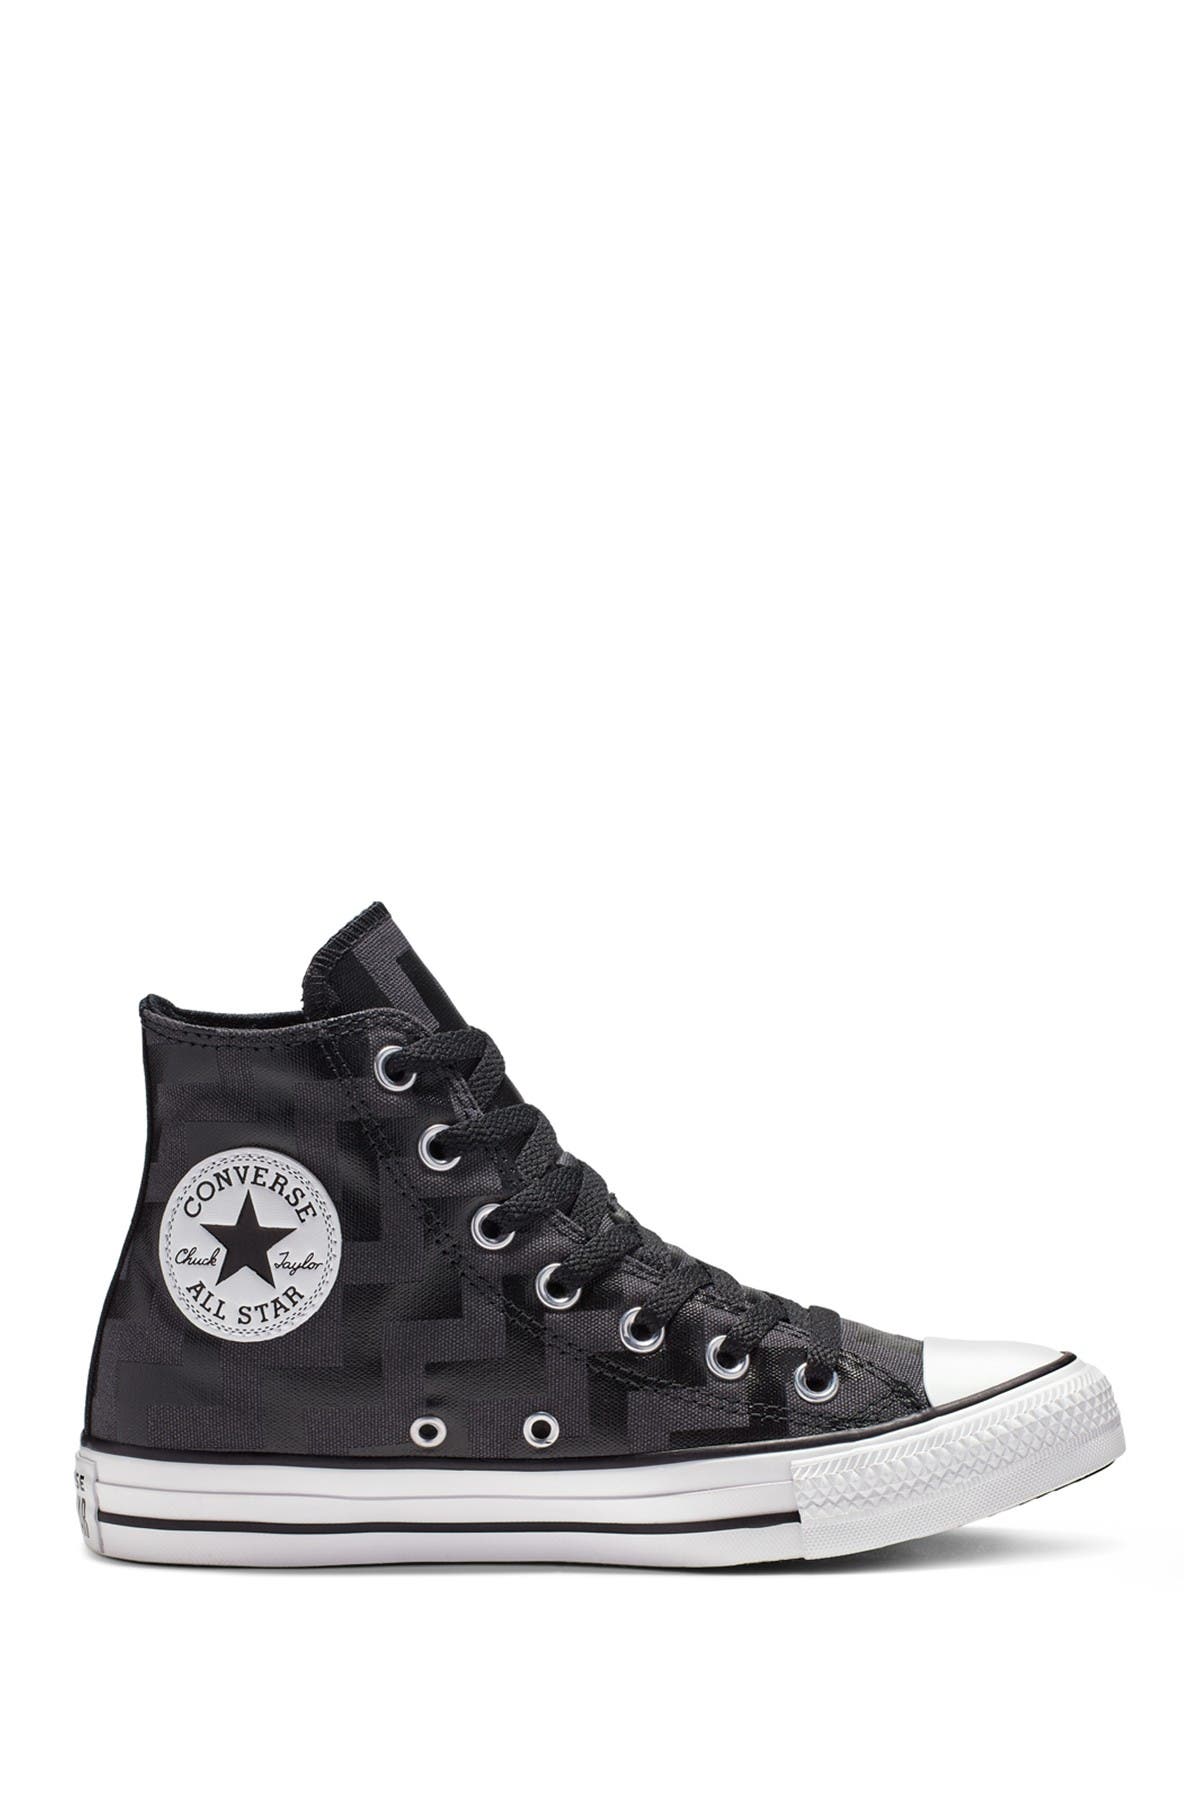 Converse | Chuck Taylor All Star Zigzag Print Hi Top Sneaker | HauteLook